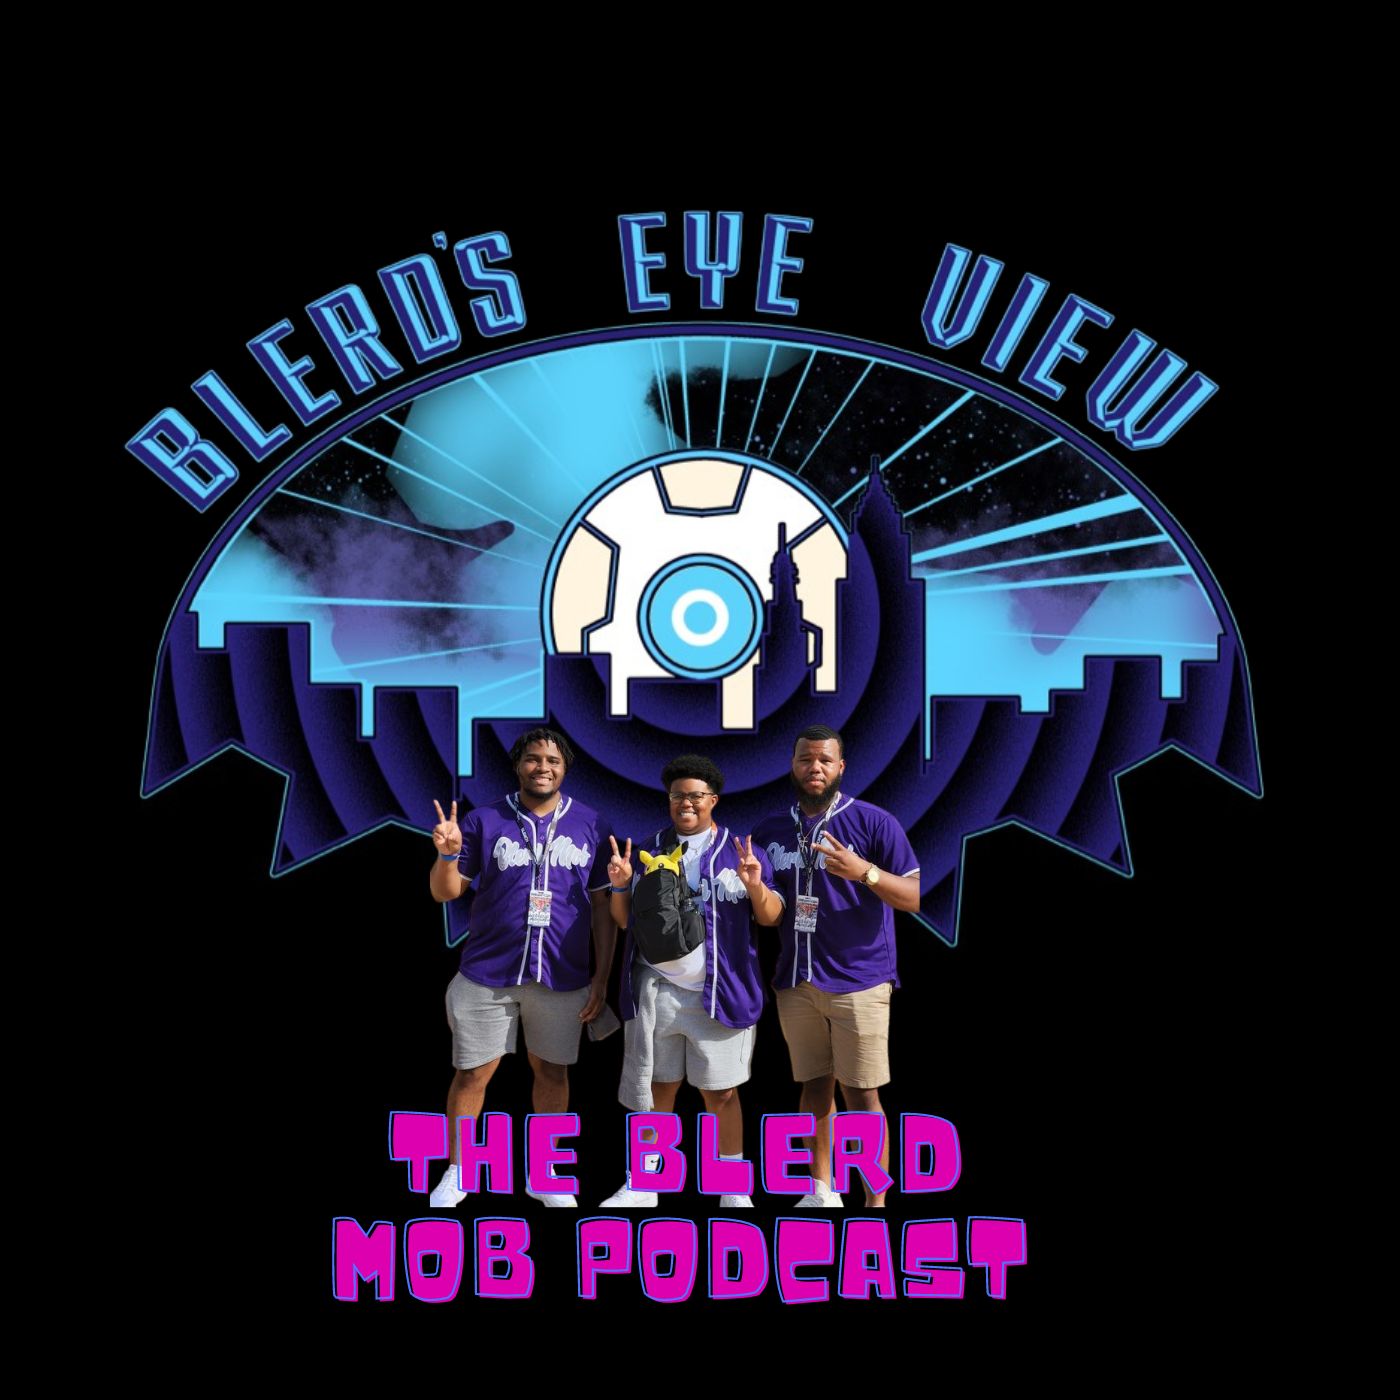 Artwork for podcast Blerd’s Eyeview